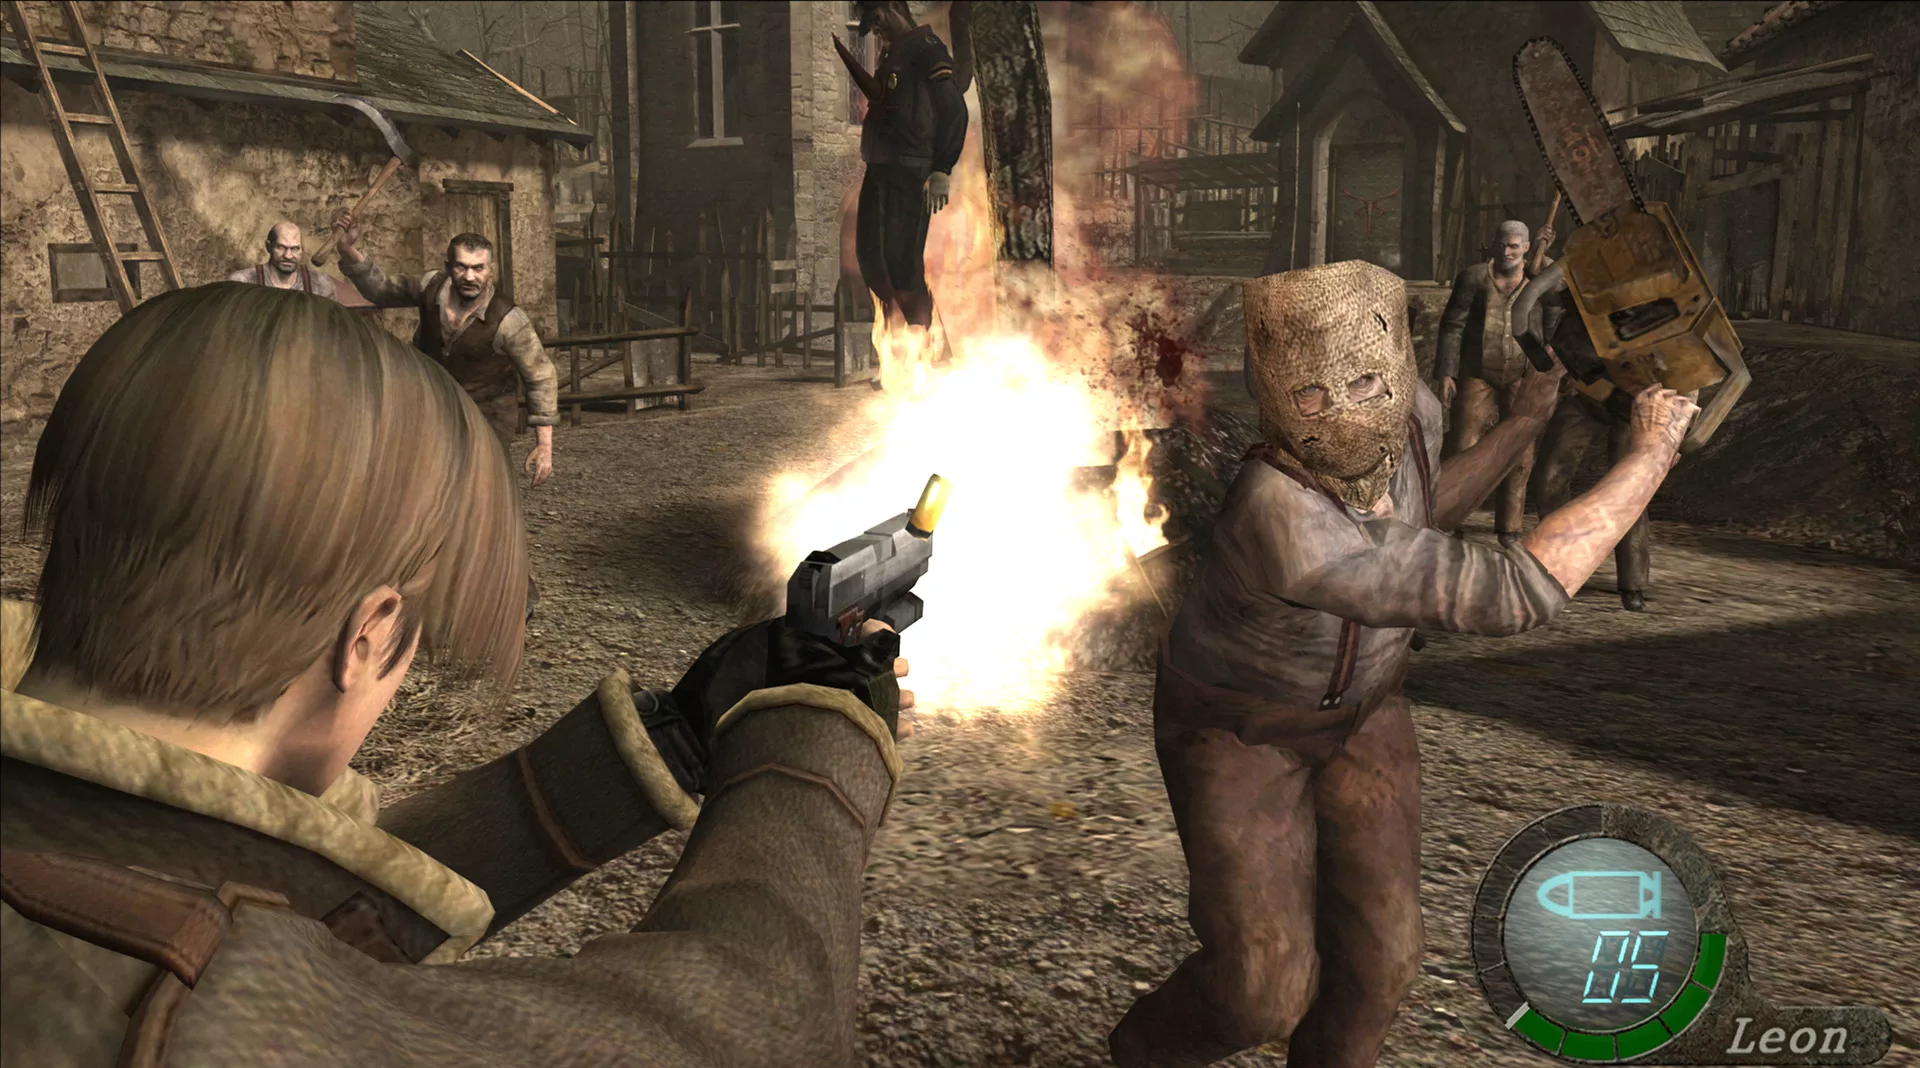 Resident Evil 4 Torrent